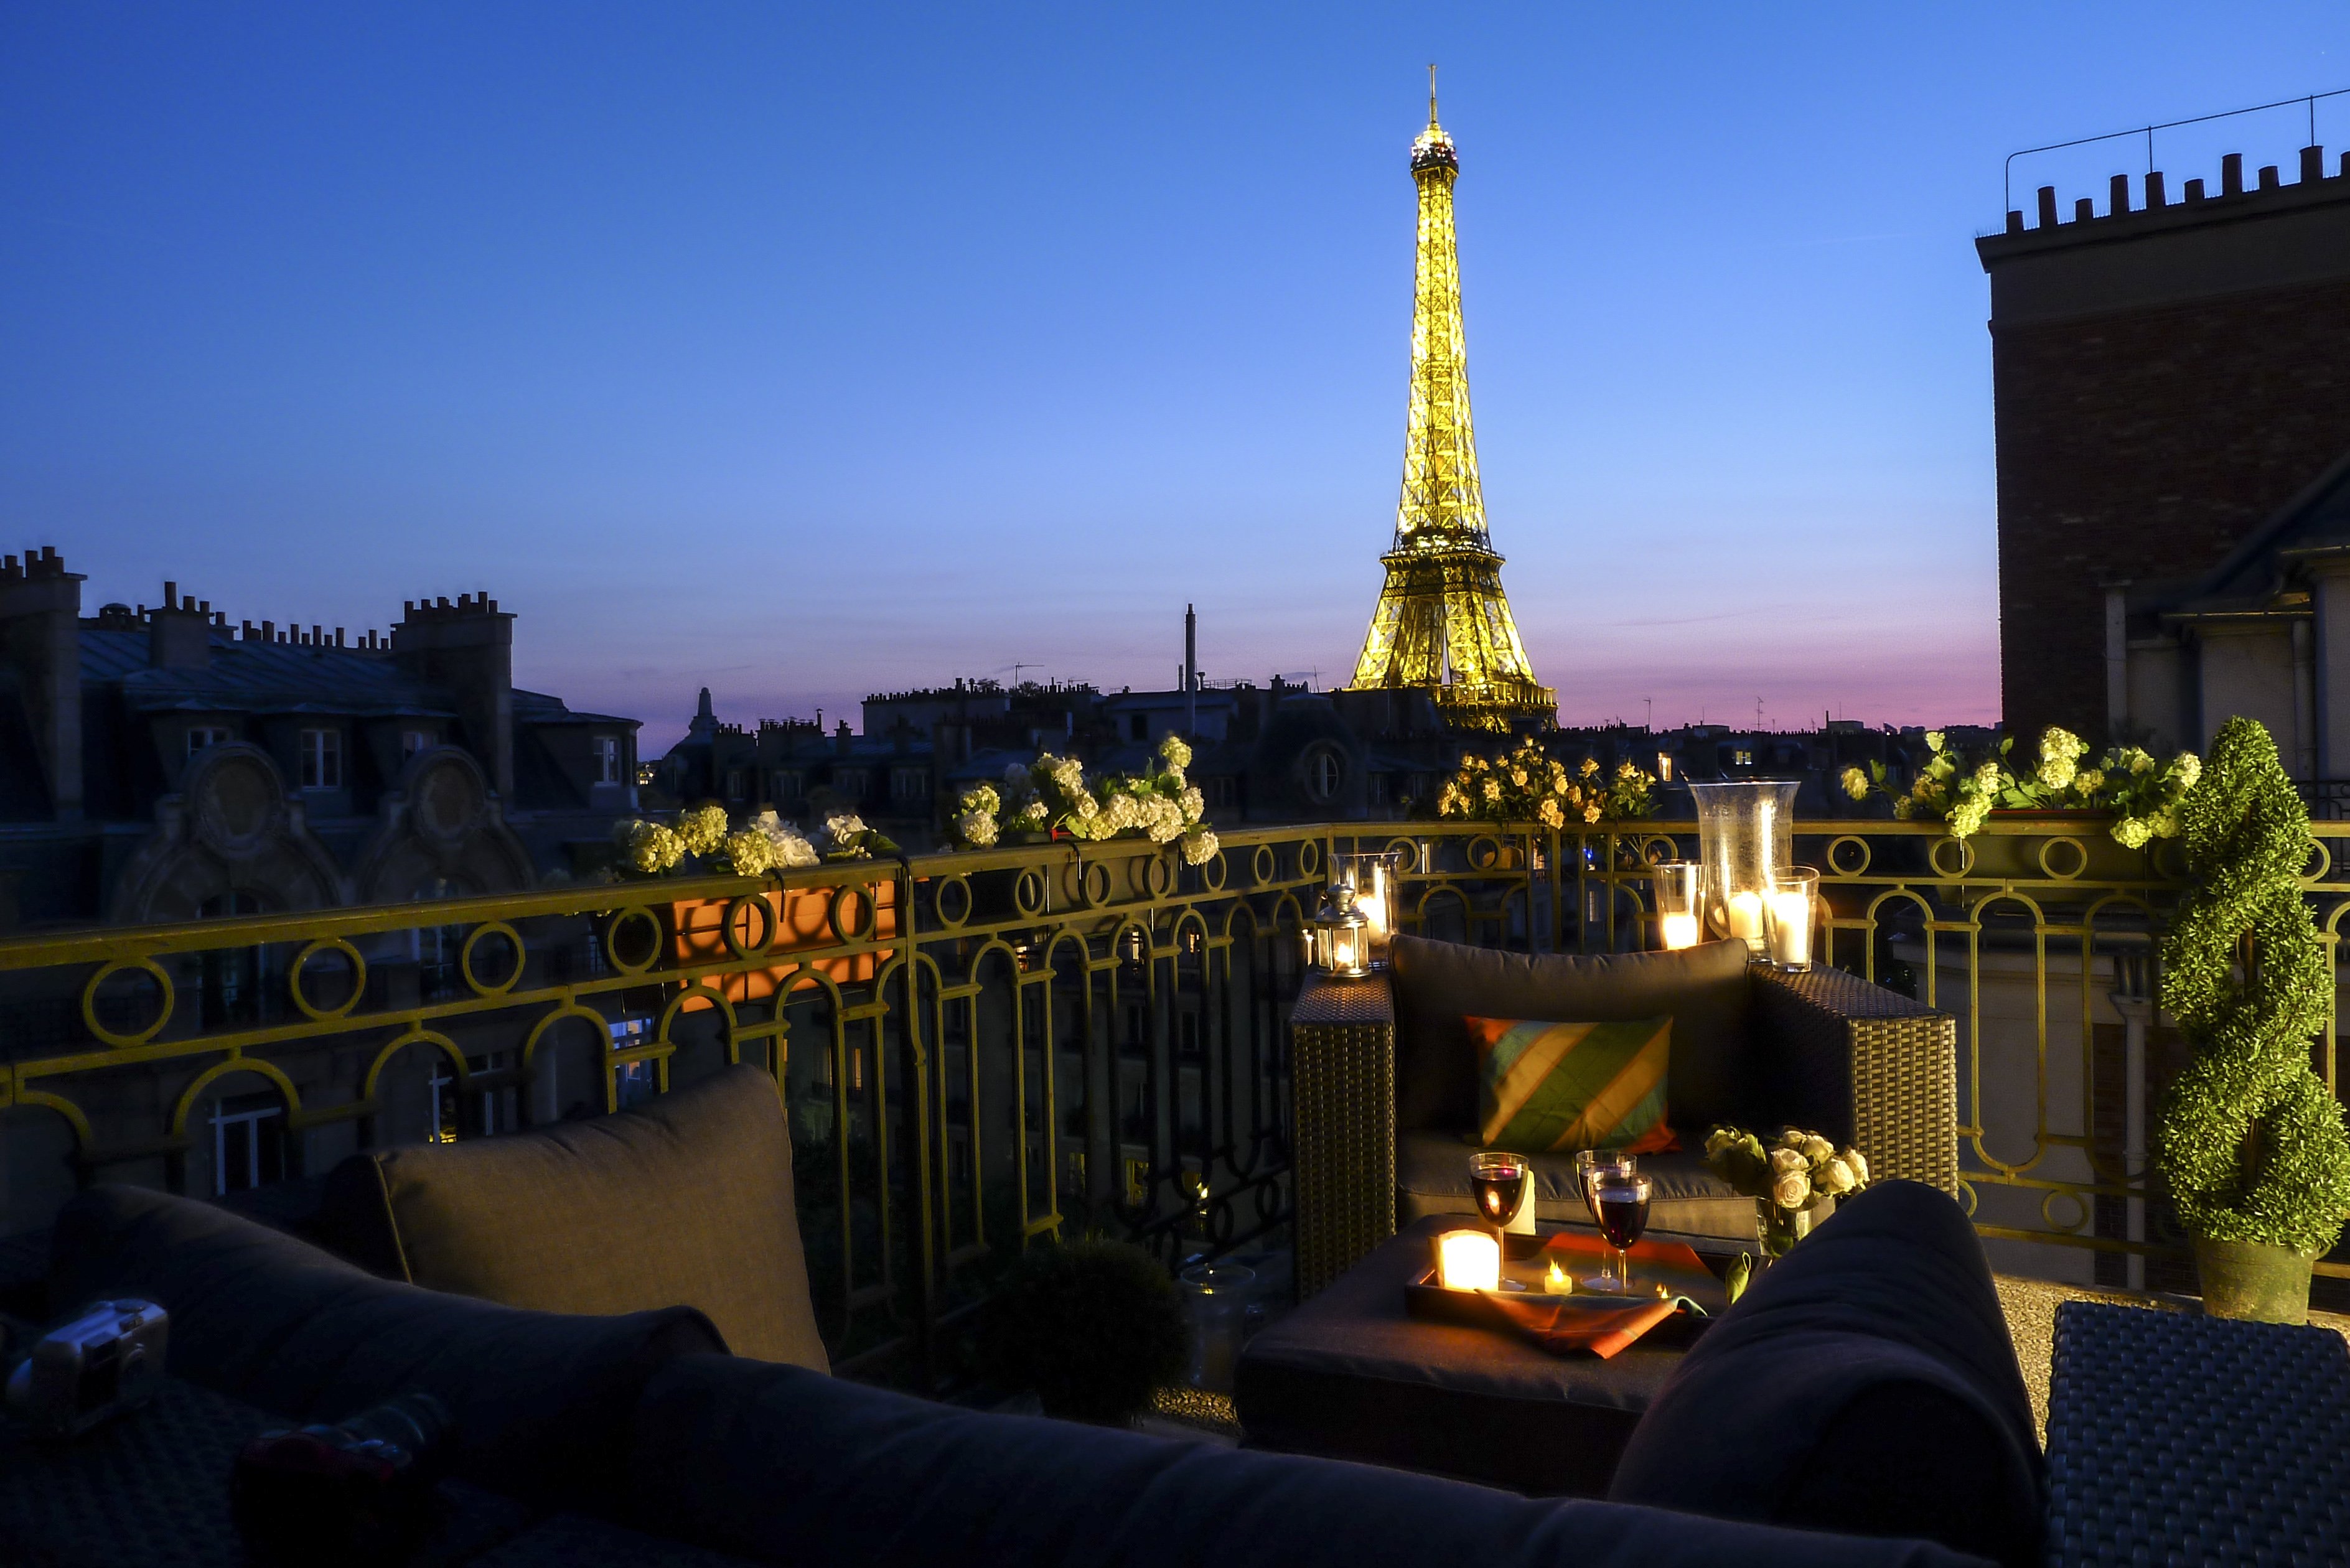 Вид на париж с эйфелевой башни. Кафе в Париже с видом на Эйфелеву башню. Париж вид на Эйфелеву башню. Париж вид с балкона на Эйфелеву башню. Париж балкон Эйфель.